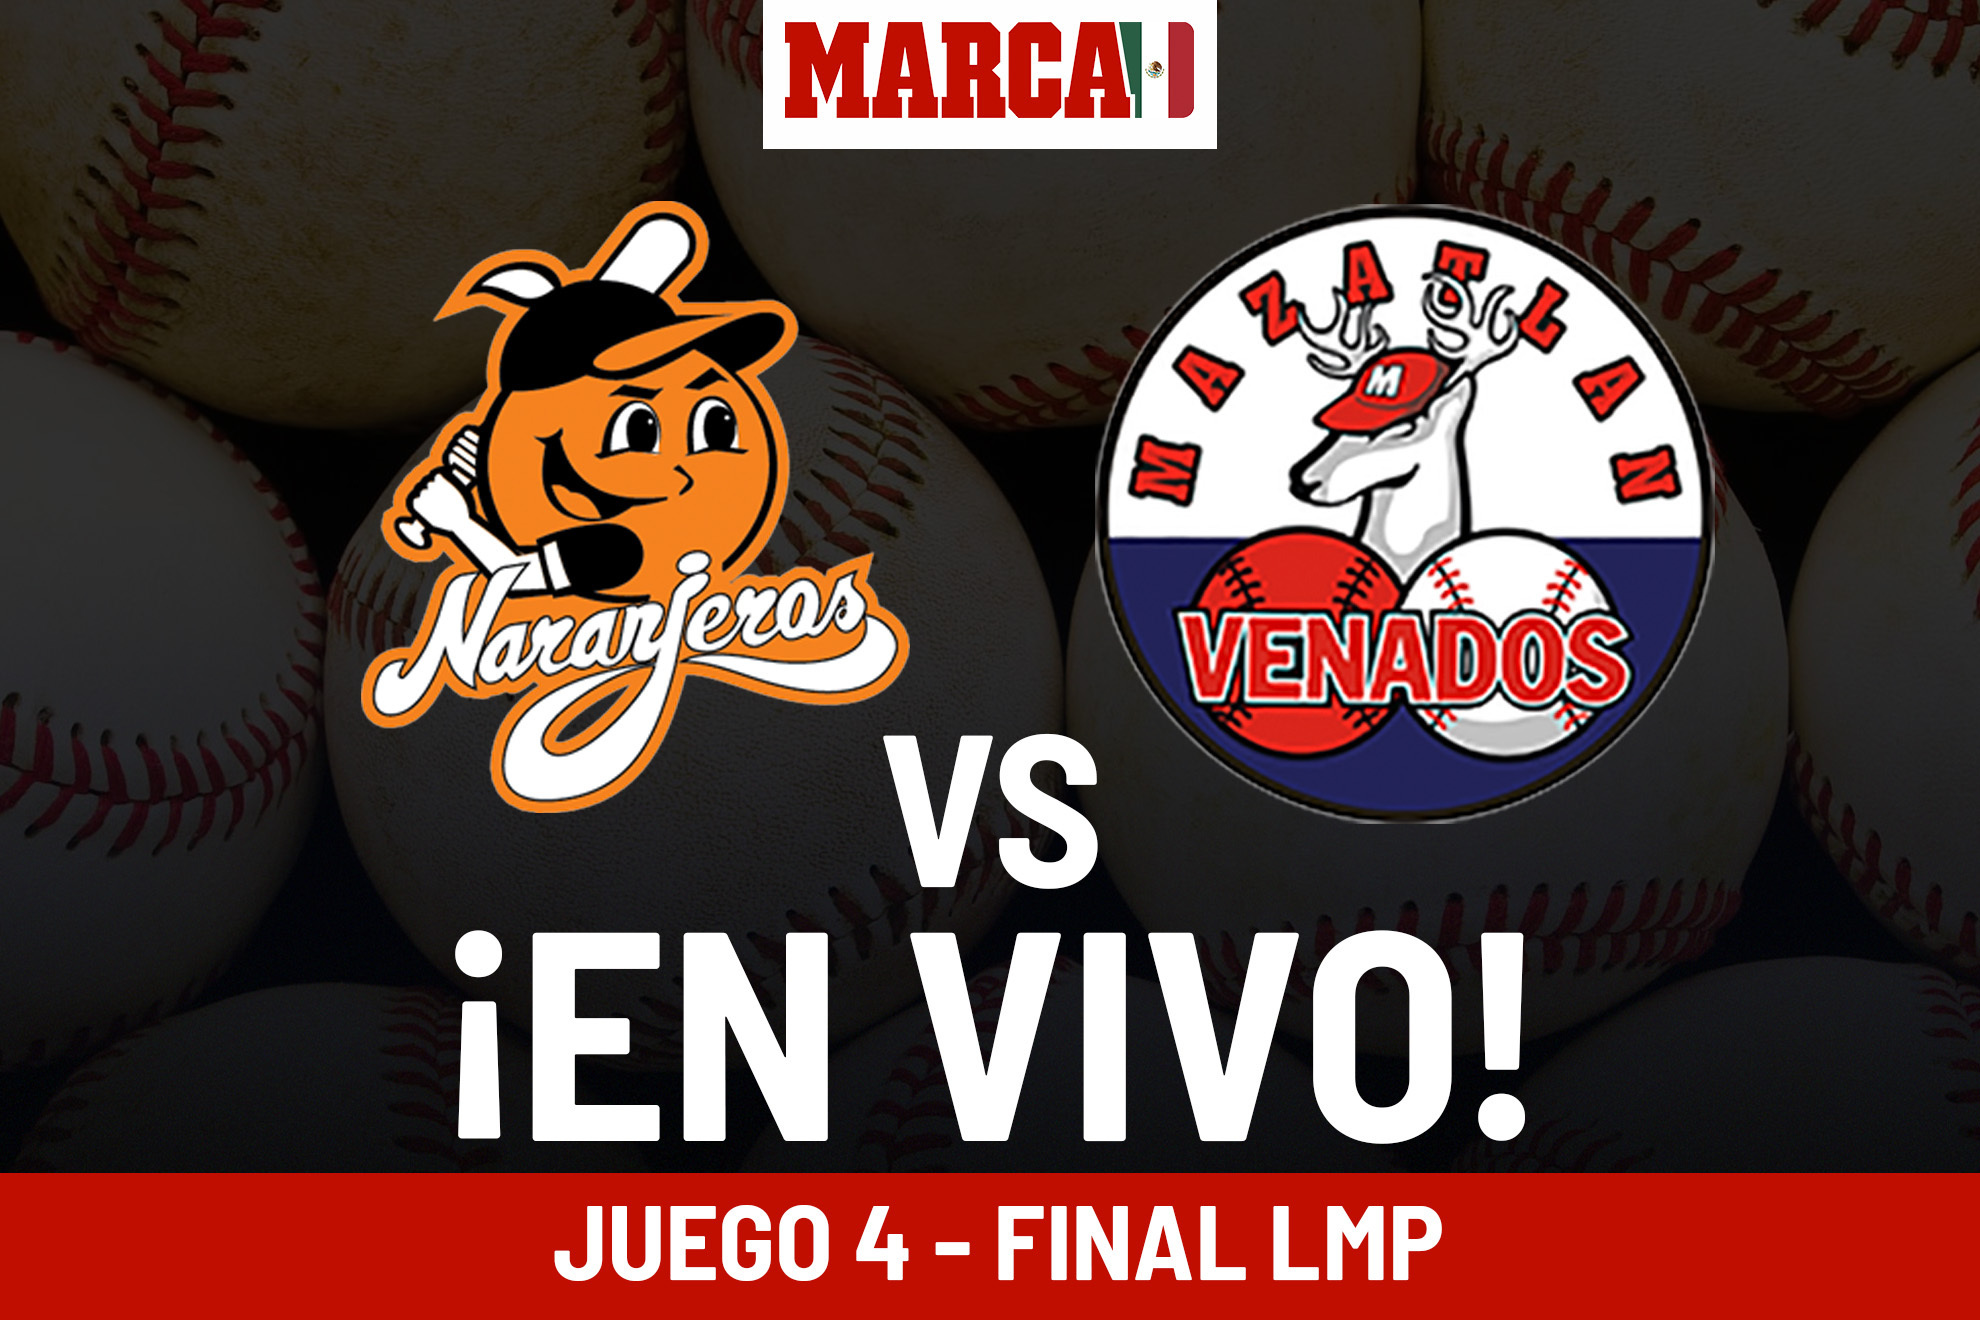 Venados vs Naranjeros En Vivo hoy. Juego 4 - Final Liga Mexicana del Pacfico 2024